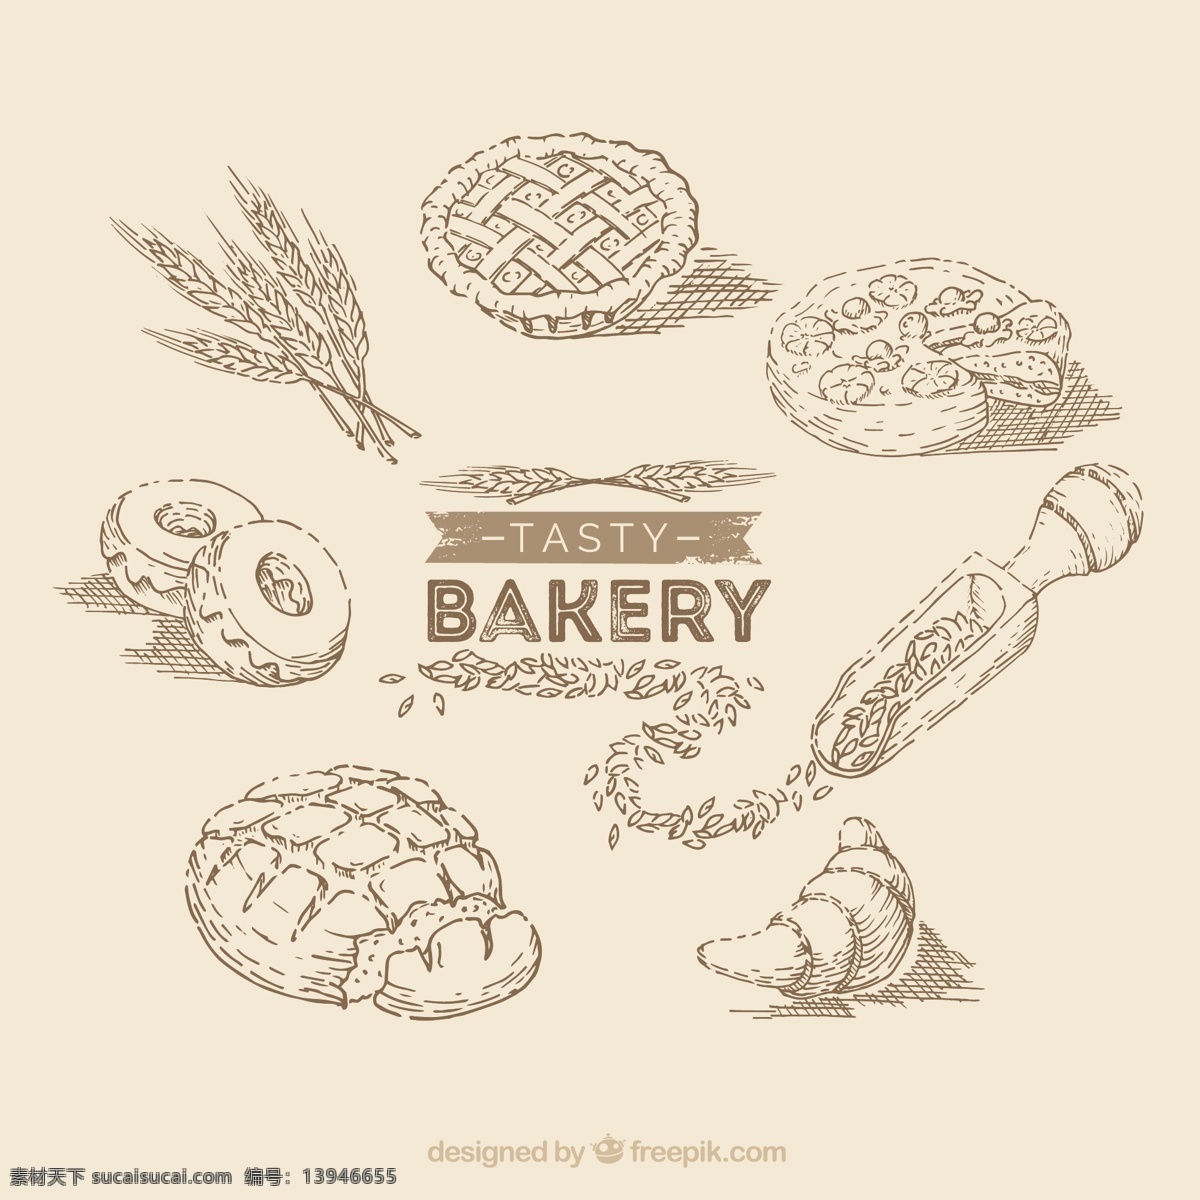 手工面包元素 一方面 蛋糕 面包 手绘 小麦 馅饼 牛角包元素 绘制图纸 炸圈饼 勾勒轮廓